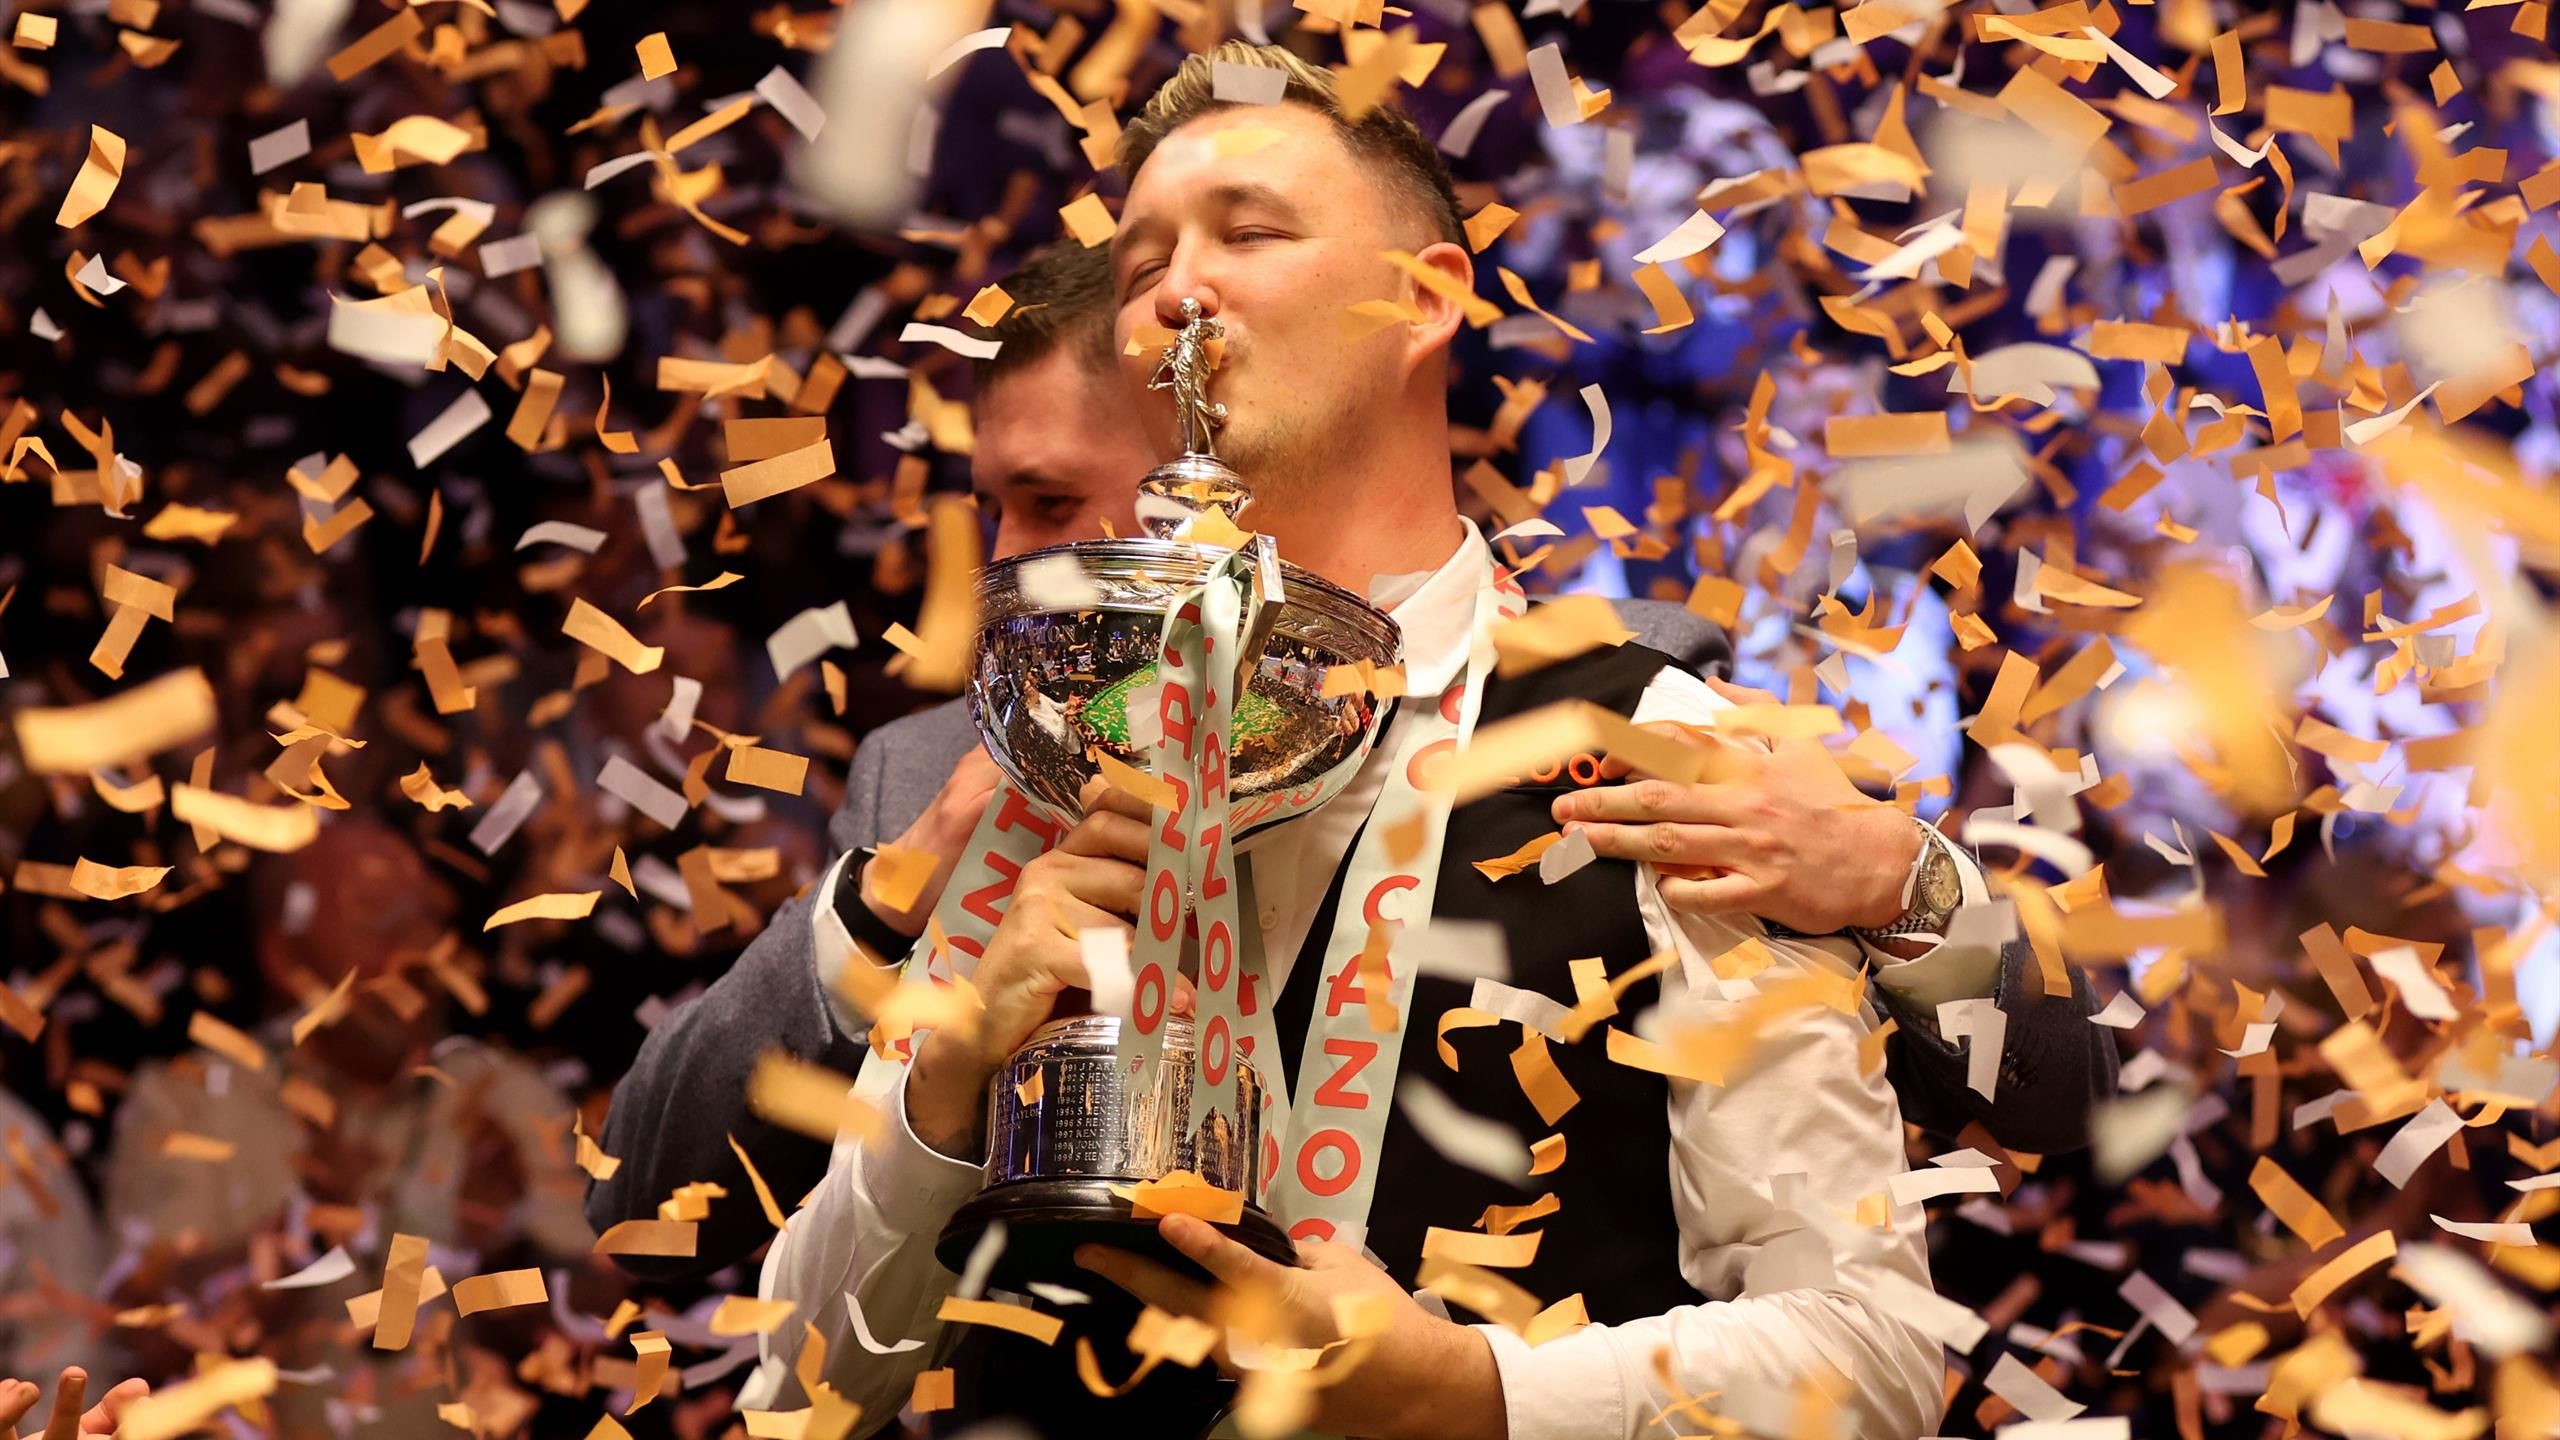 Coppa del mondo di snooker: Kyren Wilson viene incoronato campione del mondo per la prima volta nella finale contro Jack Jones – “Il Guerriero” nella porta dei suoi sogni